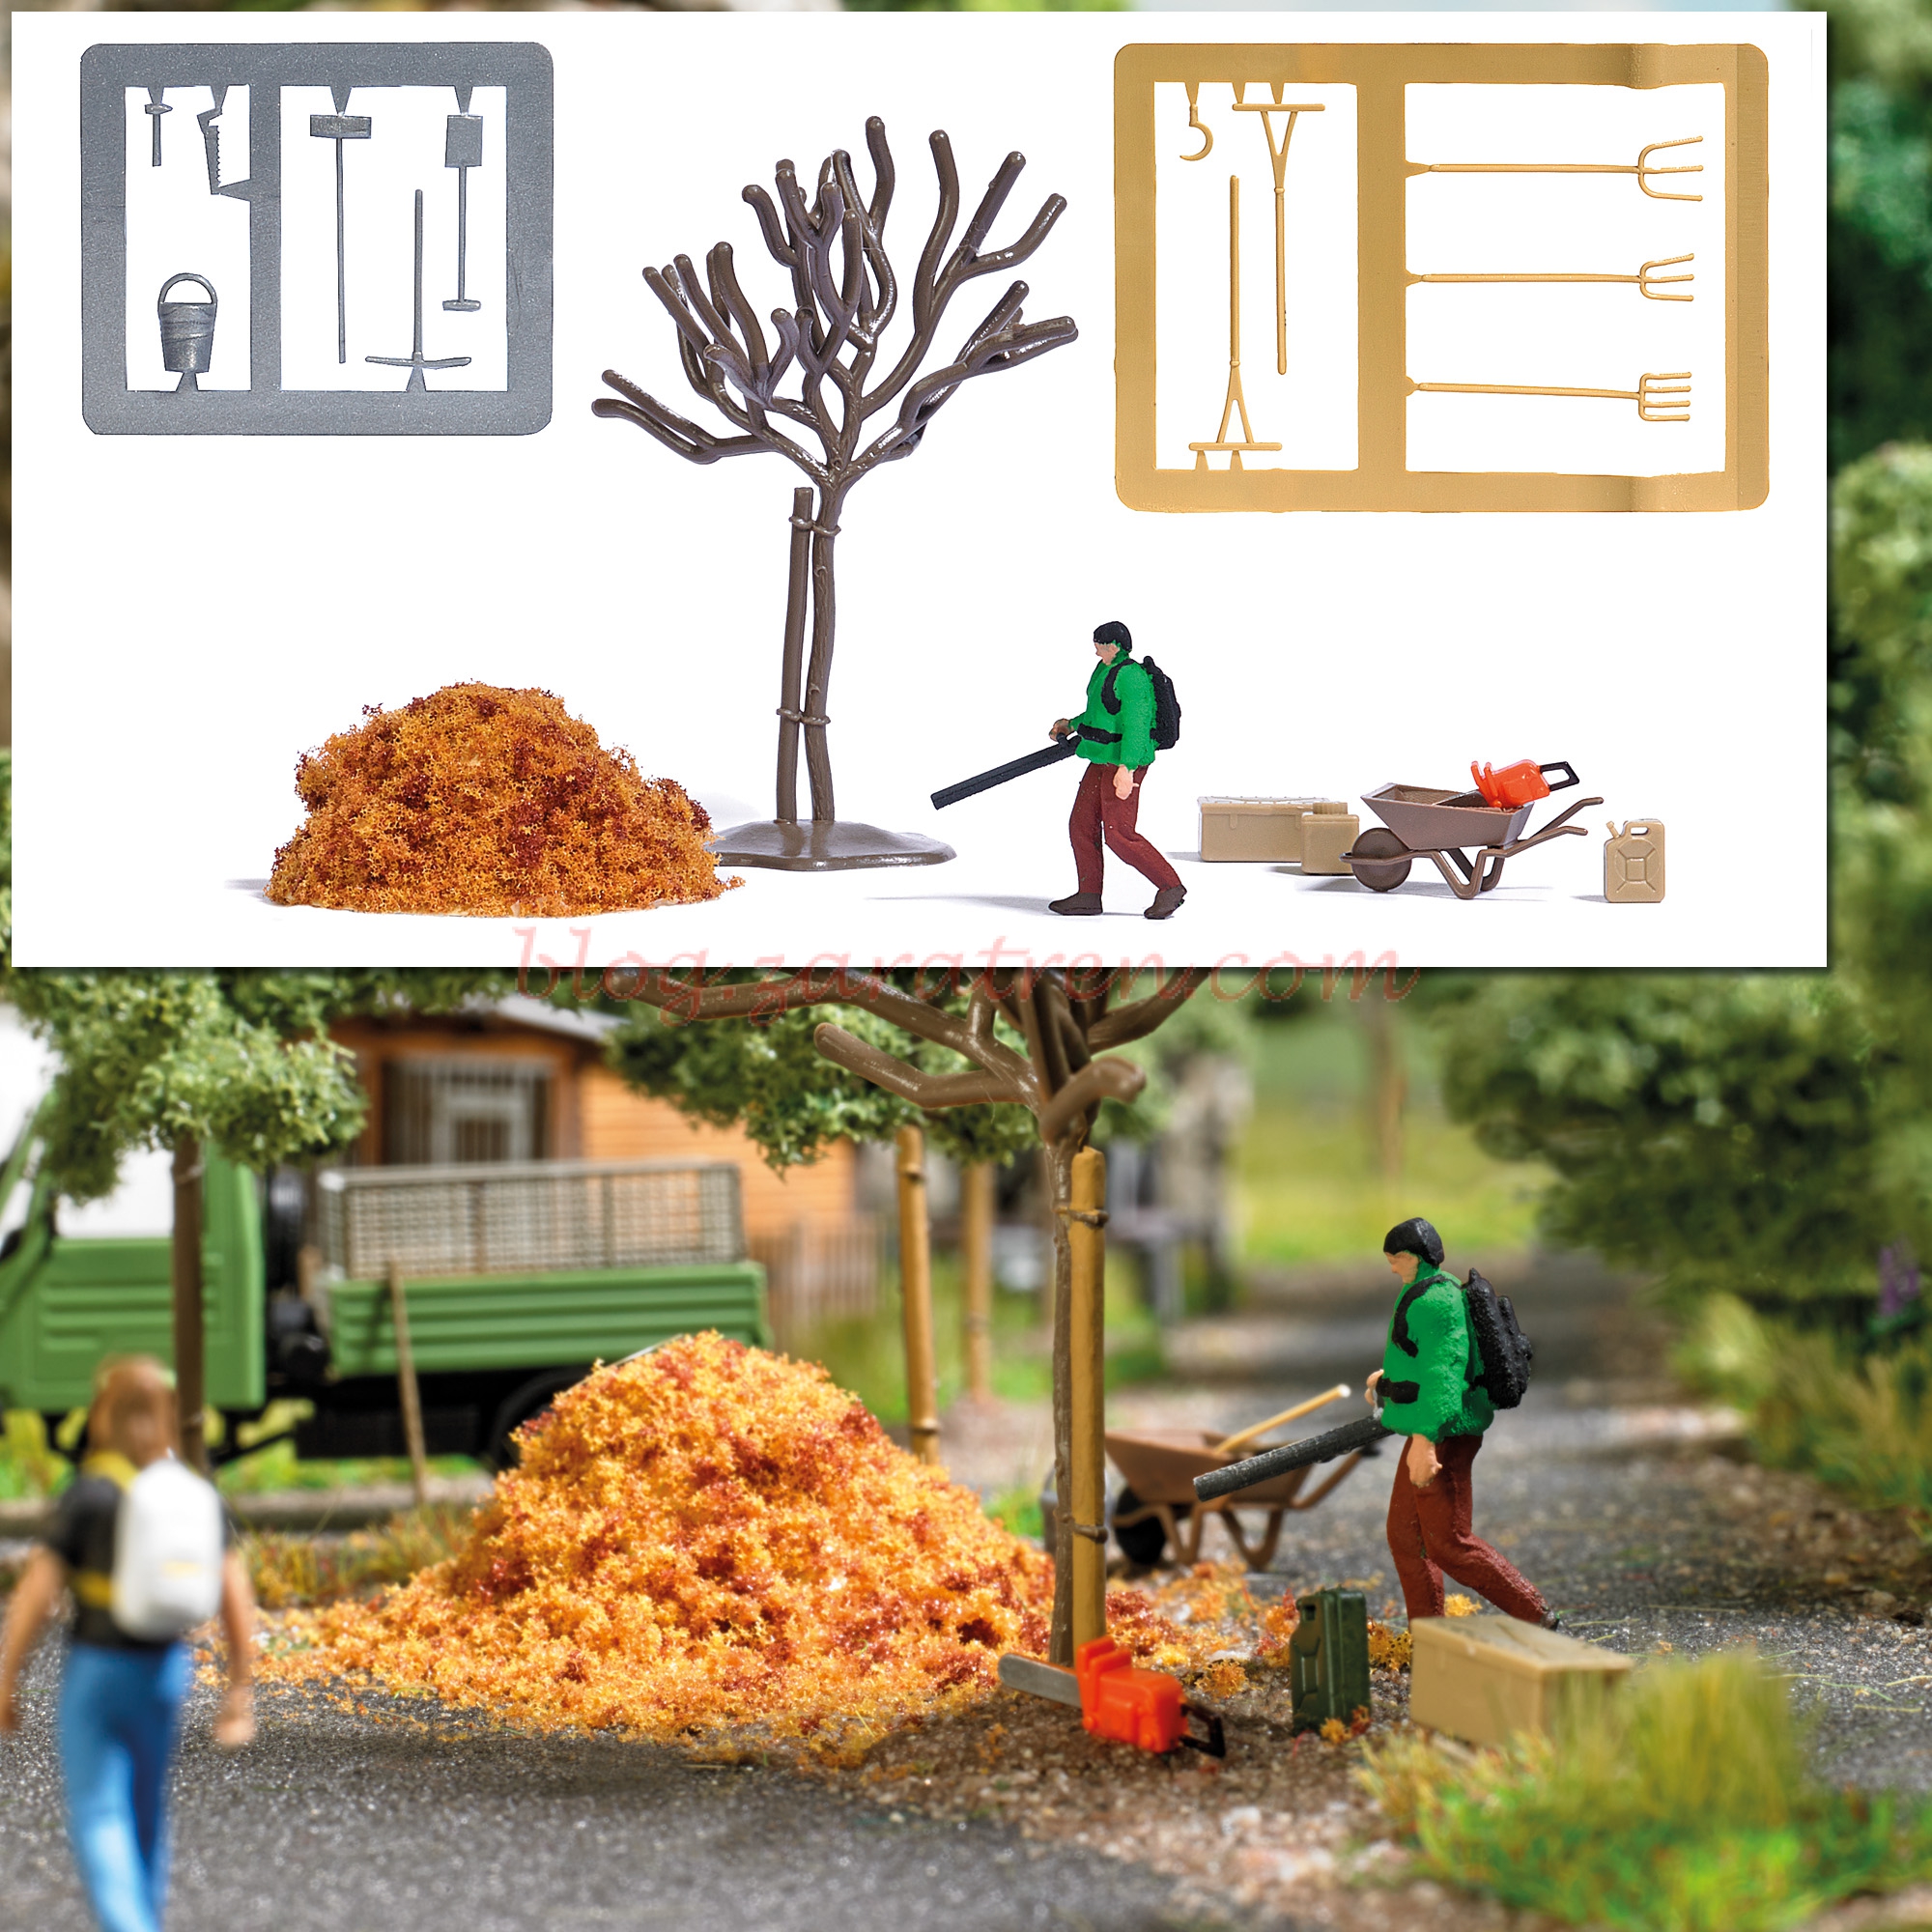 Busch – Limpiador de hojas de jardin con complementos, Escala H0, Ref: 7852.